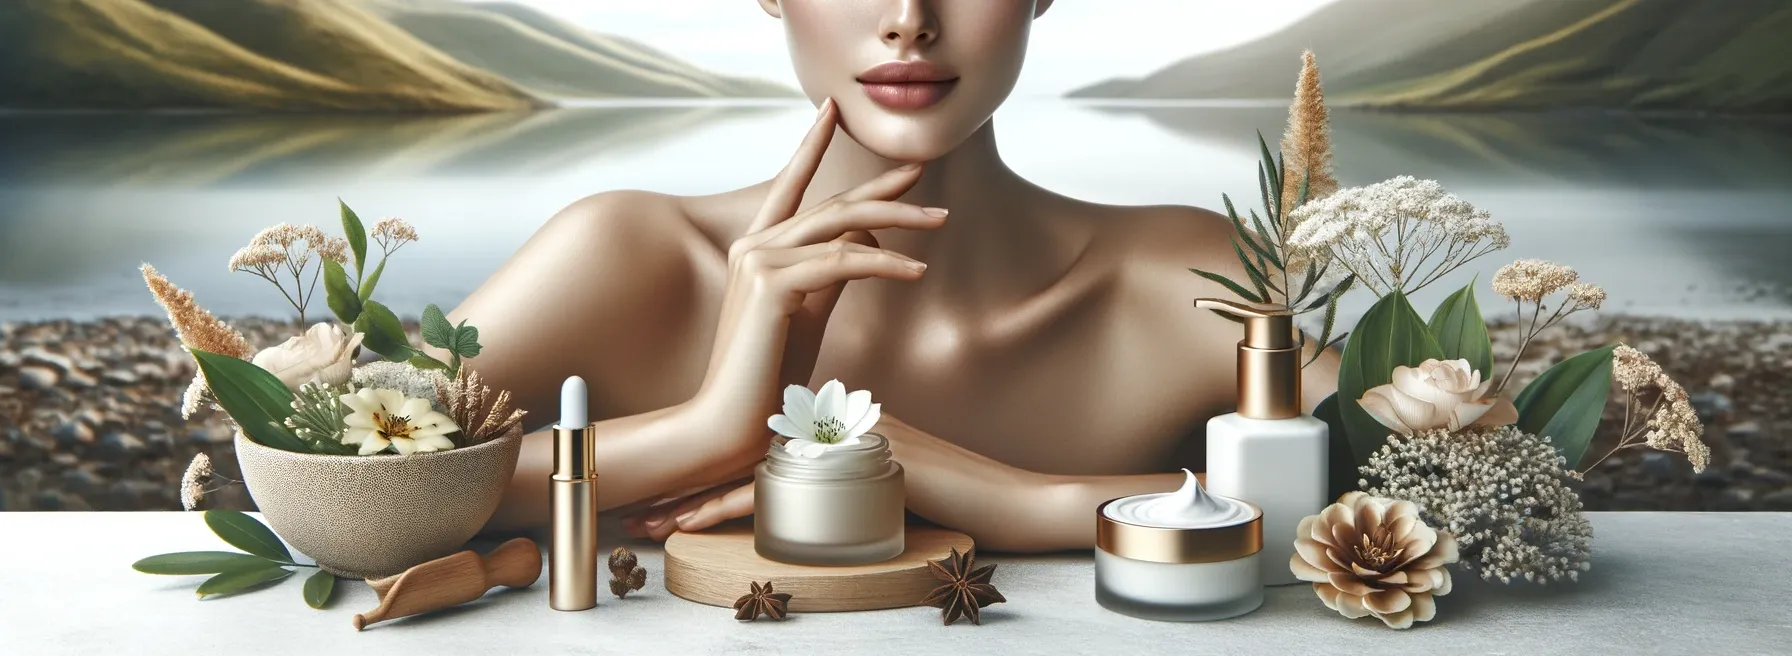 Skin Care & Organics 